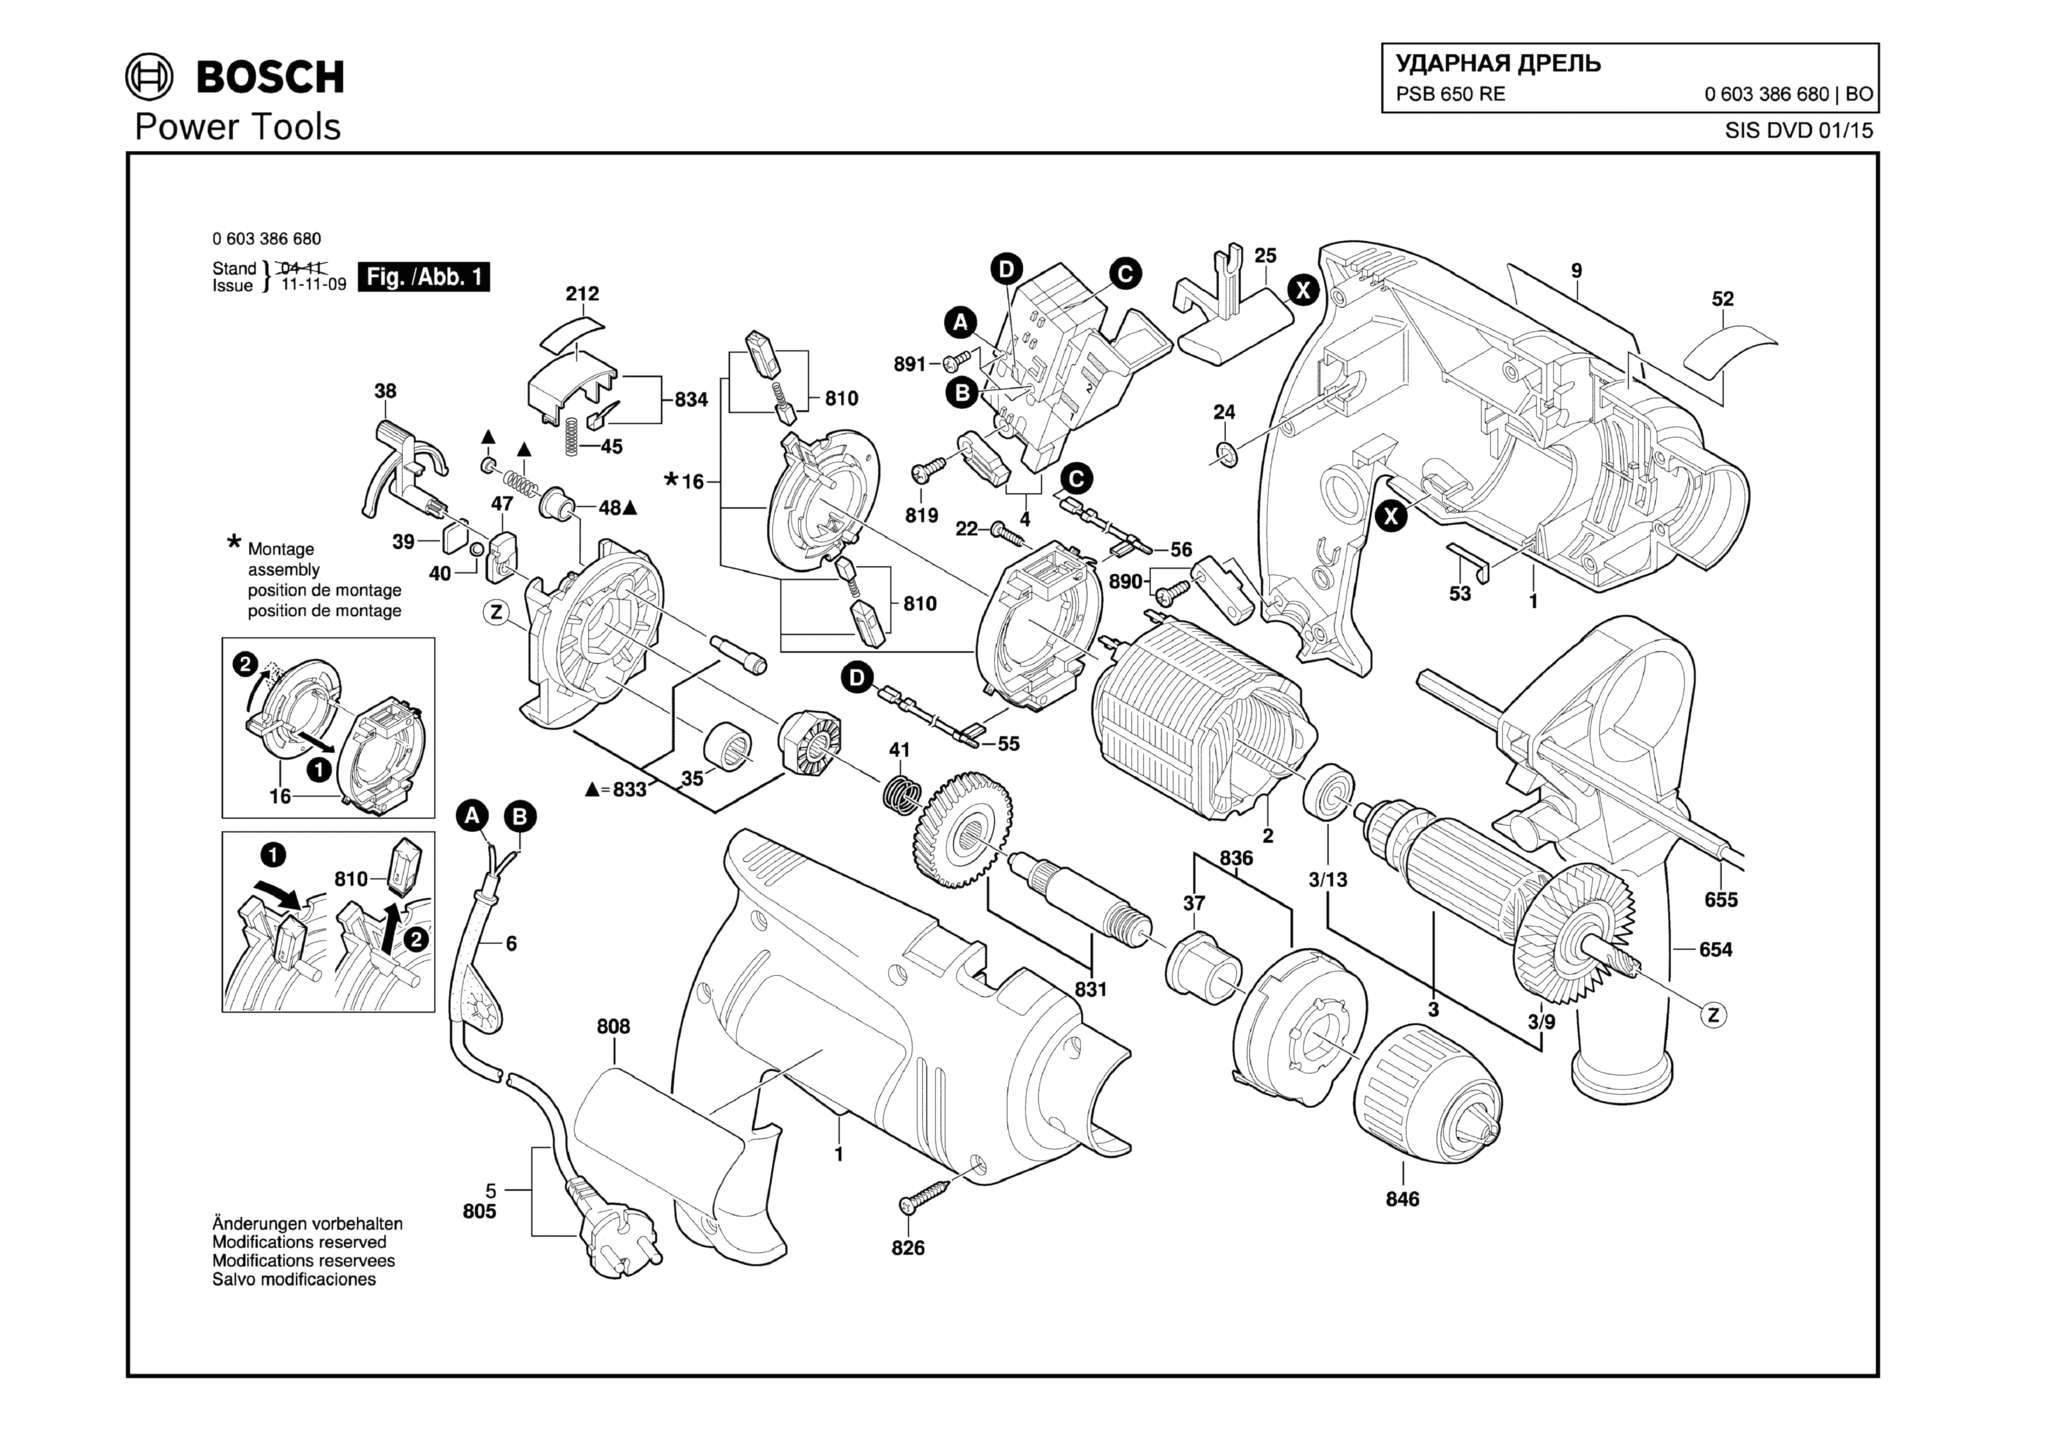 Запчасти, схема и деталировка Bosch PSB 650 RE (ТИП 0603386680)